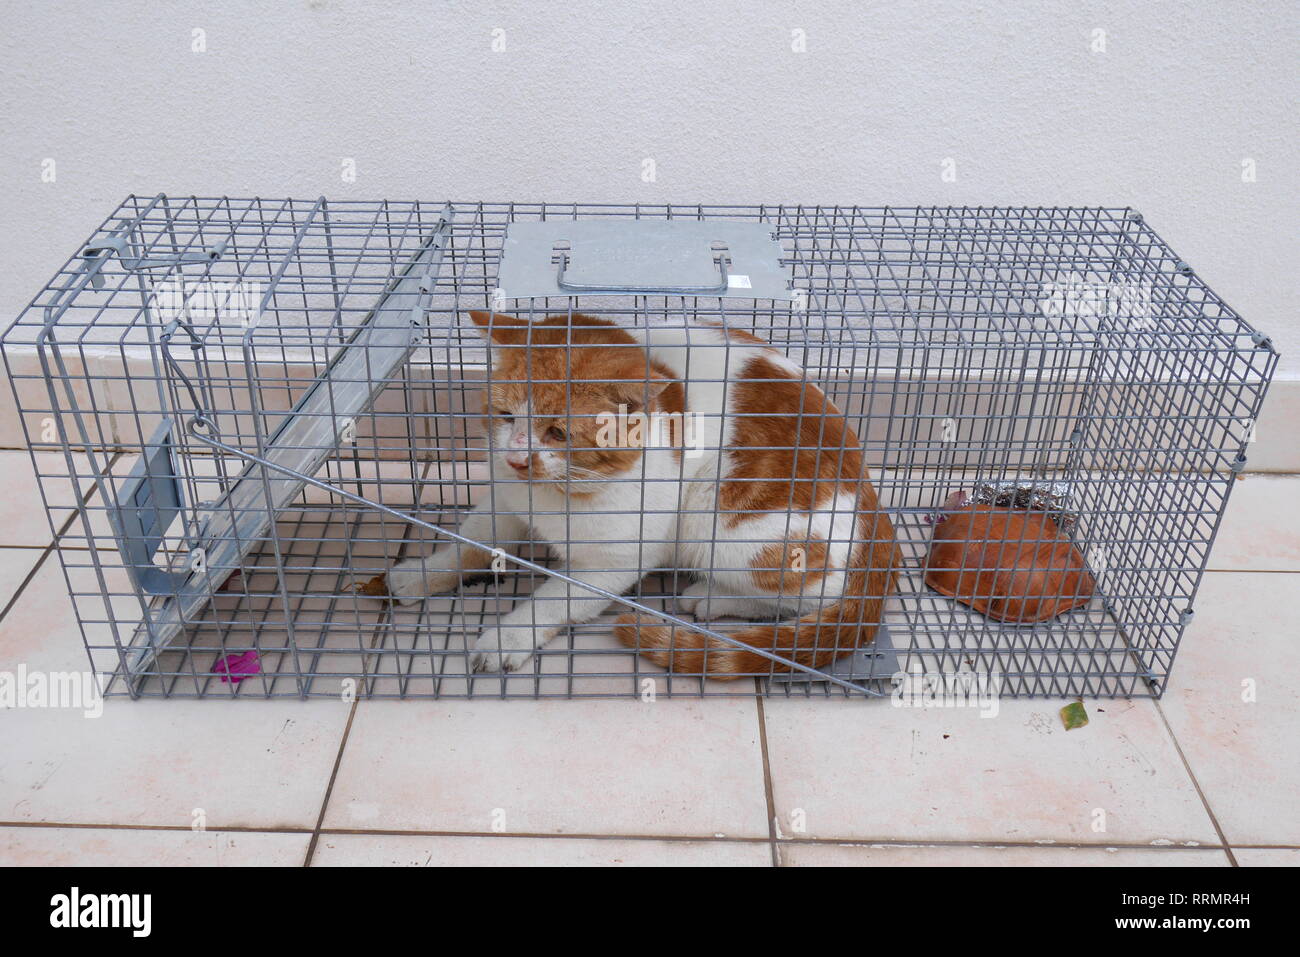 Trappola per gatti immagini e fotografie stock ad alta risoluzione